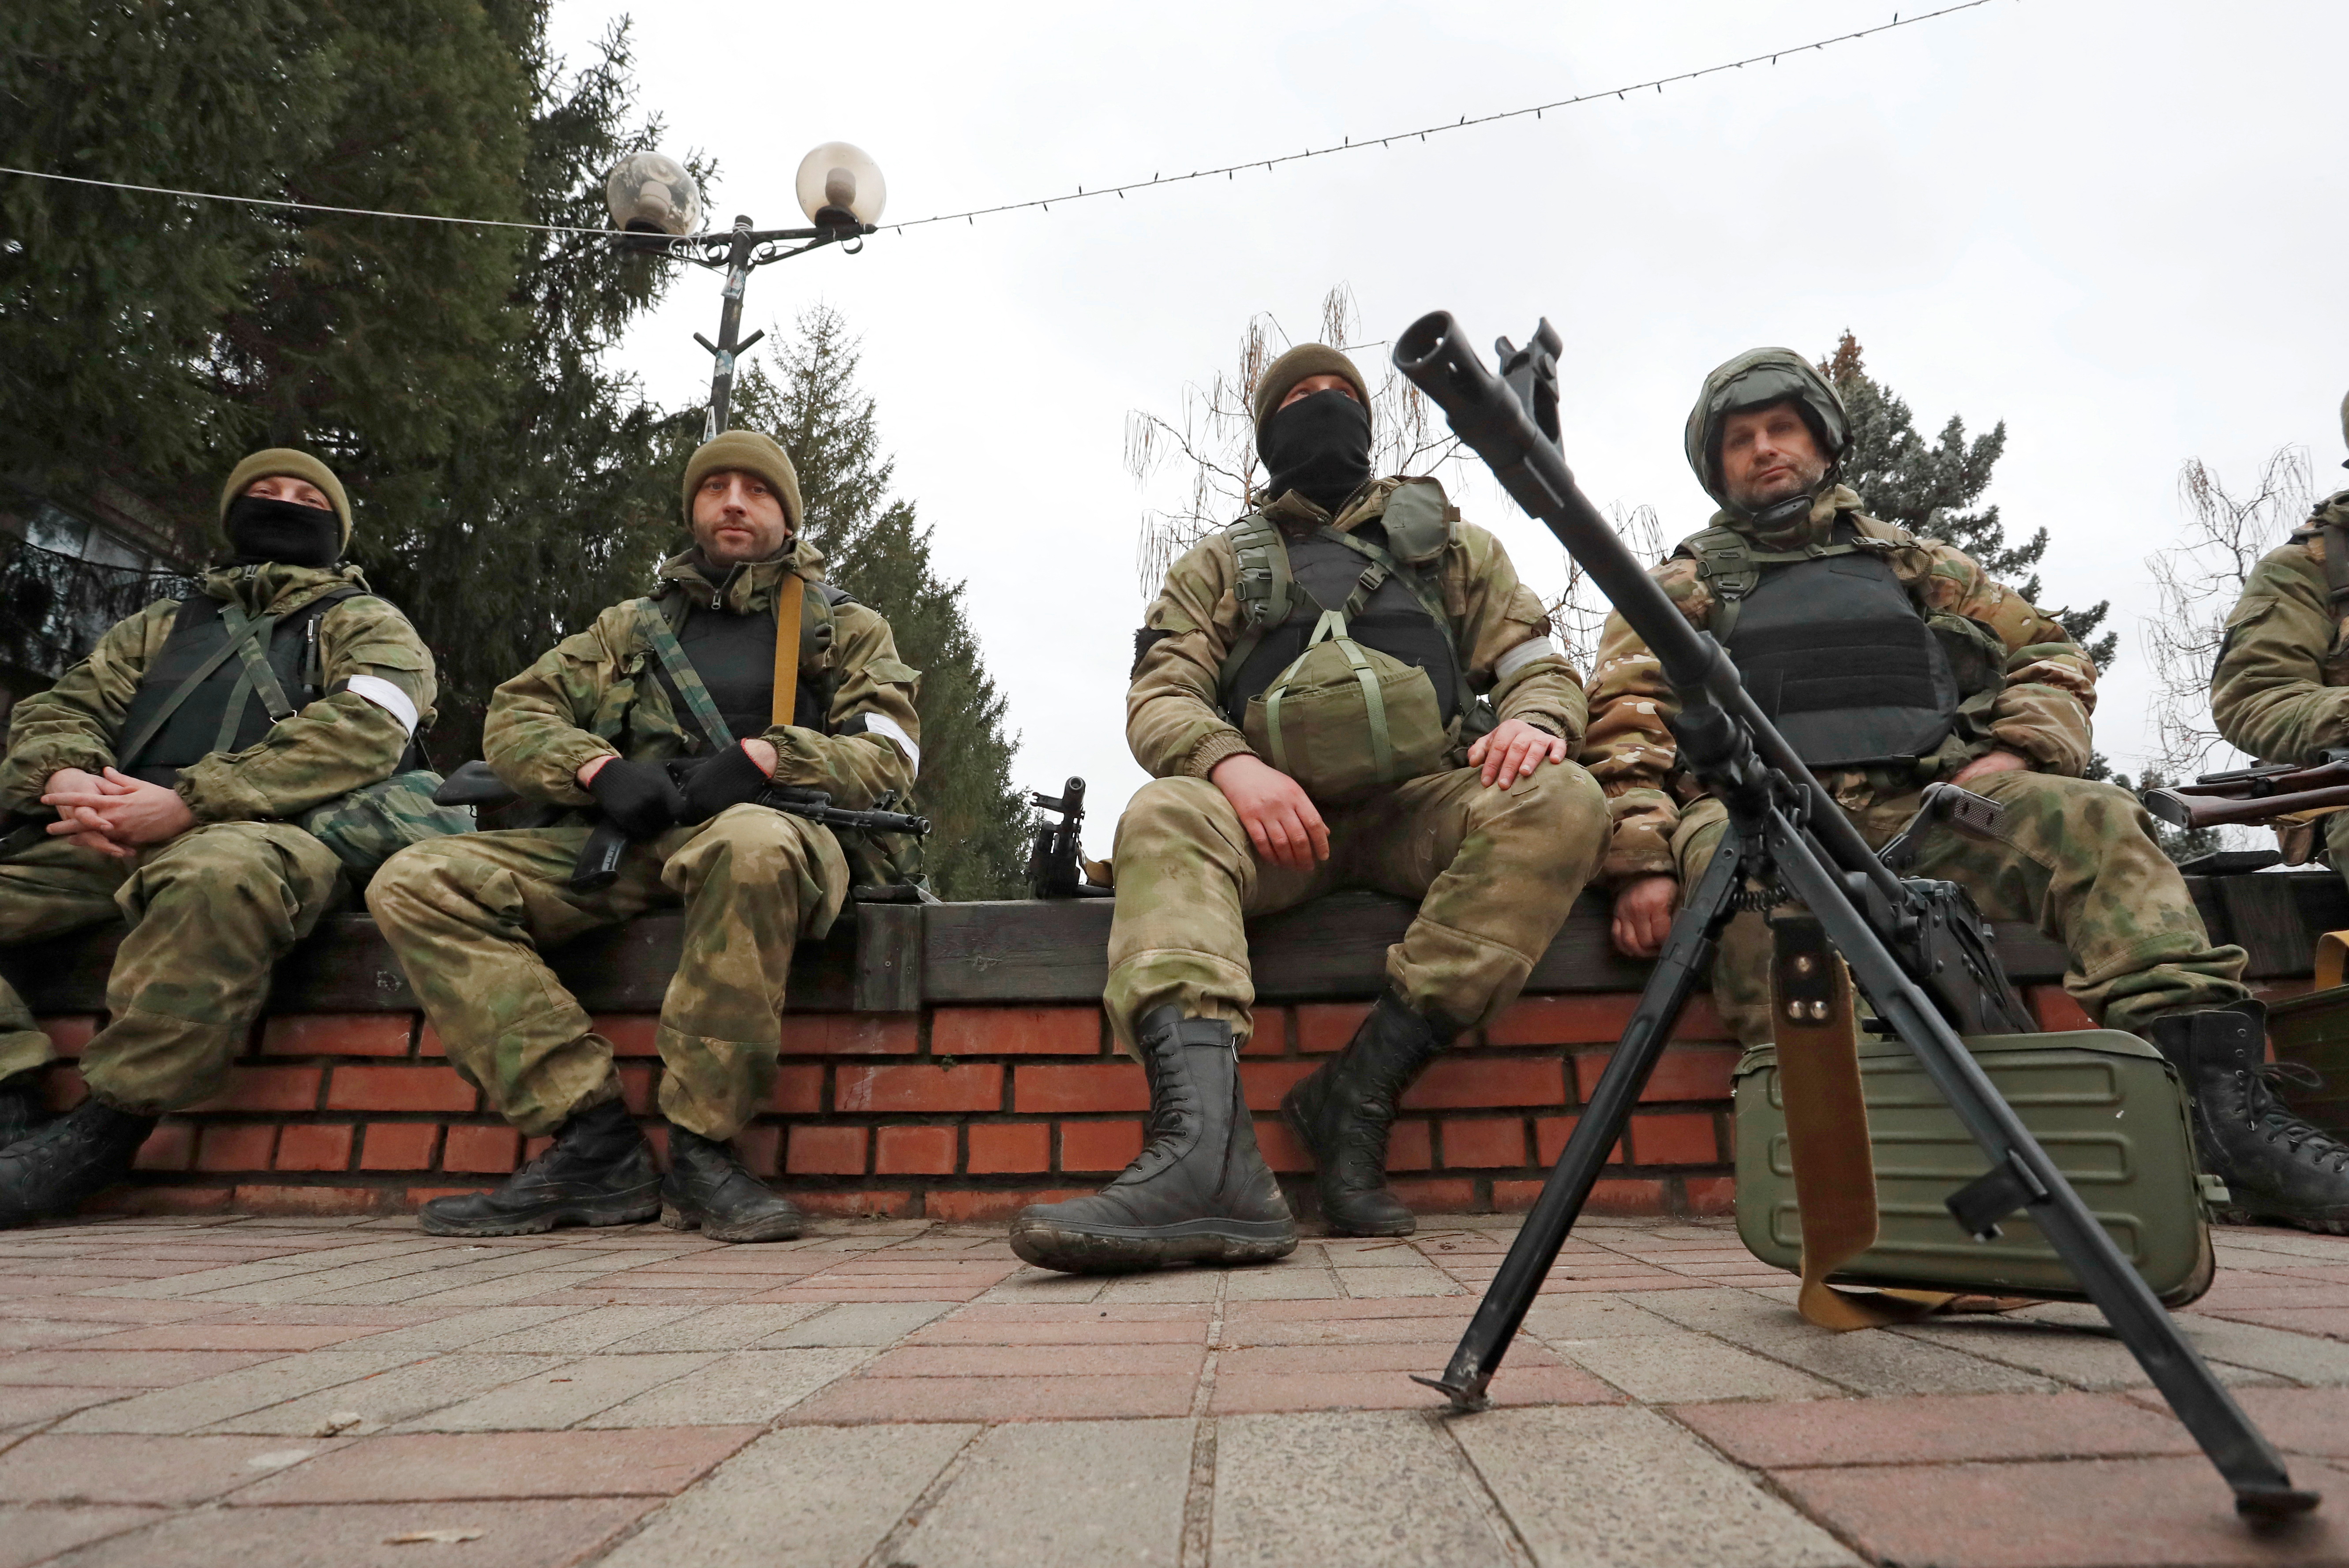 Milicianos de las milicias prorrusas son vistos fuera de la sede de la defensa territorial en Stanytsia Luhanska en la región de Luhansk, Ucrania 27 de febrero de 2022. REUTERS